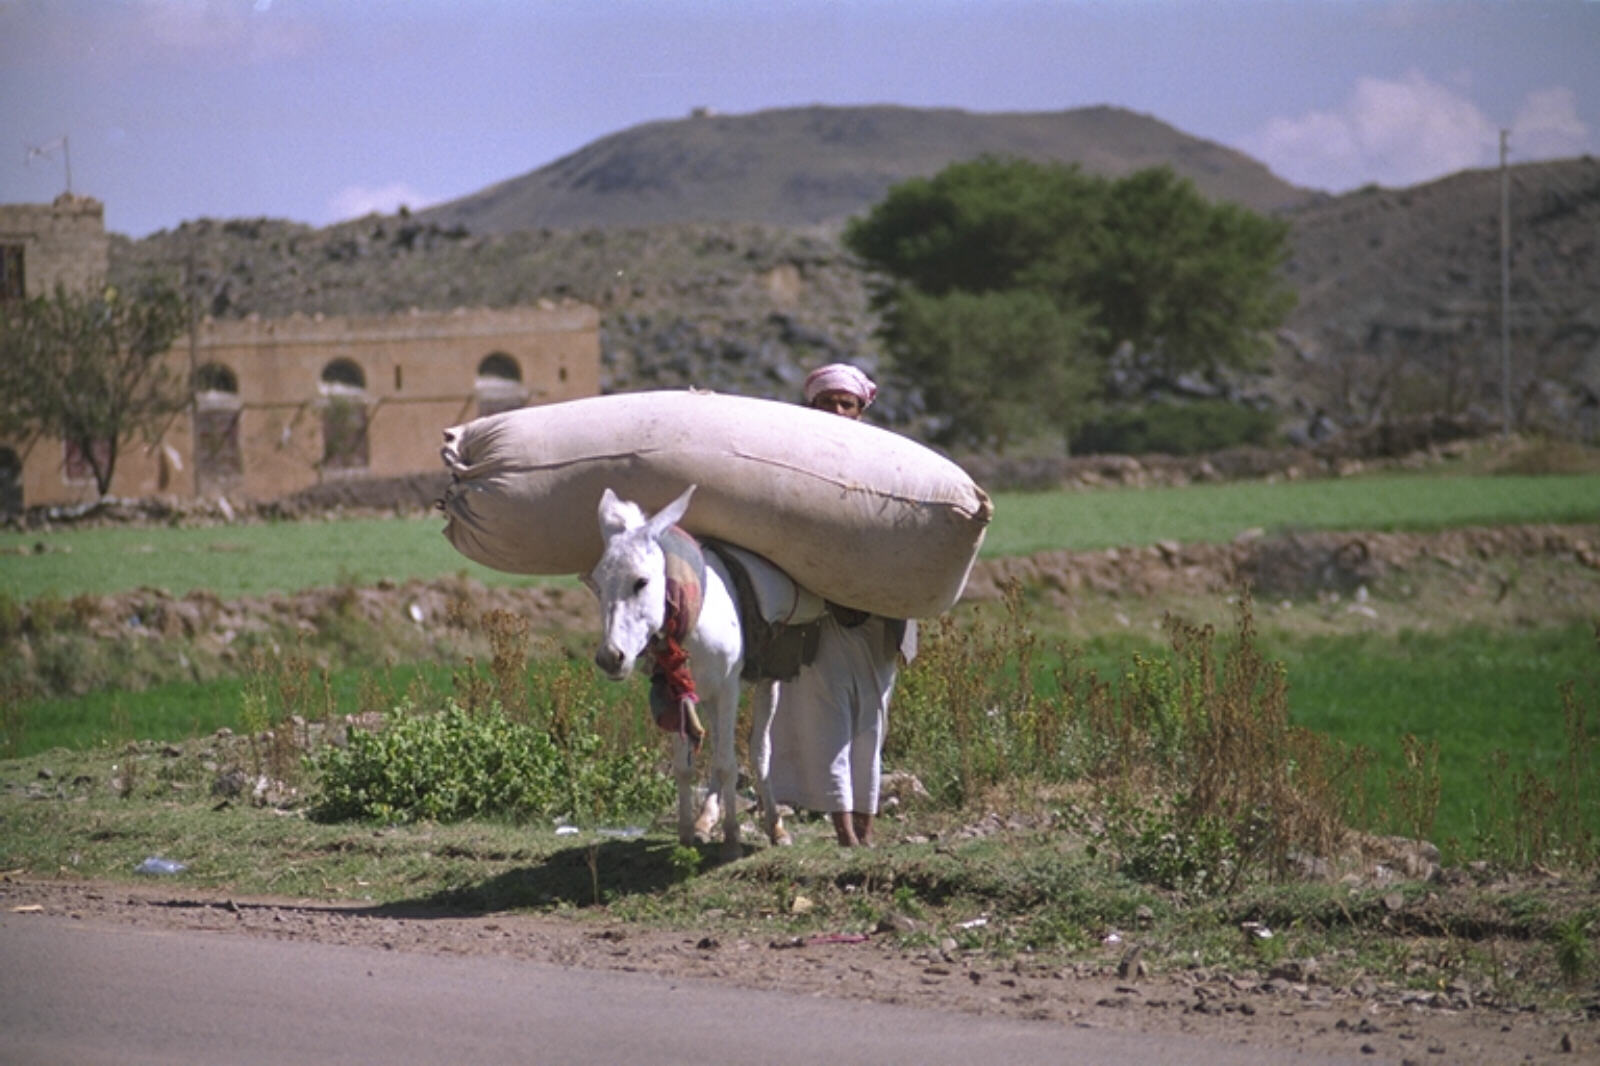 A well-loaded donkey in the Yemen